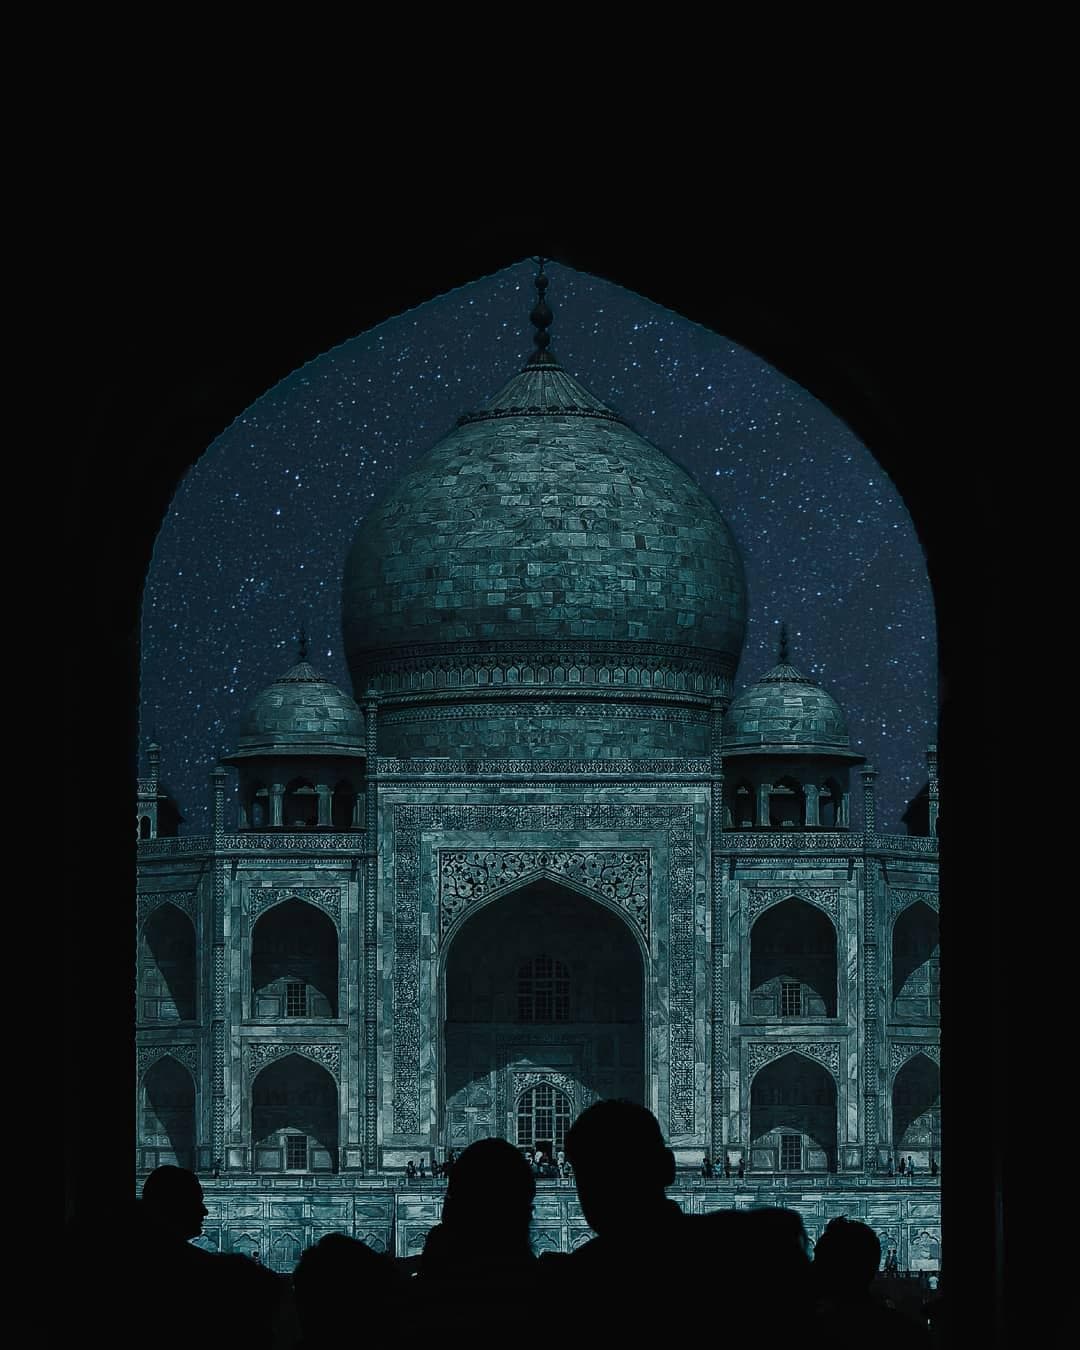 Taj Mahal illustration at night